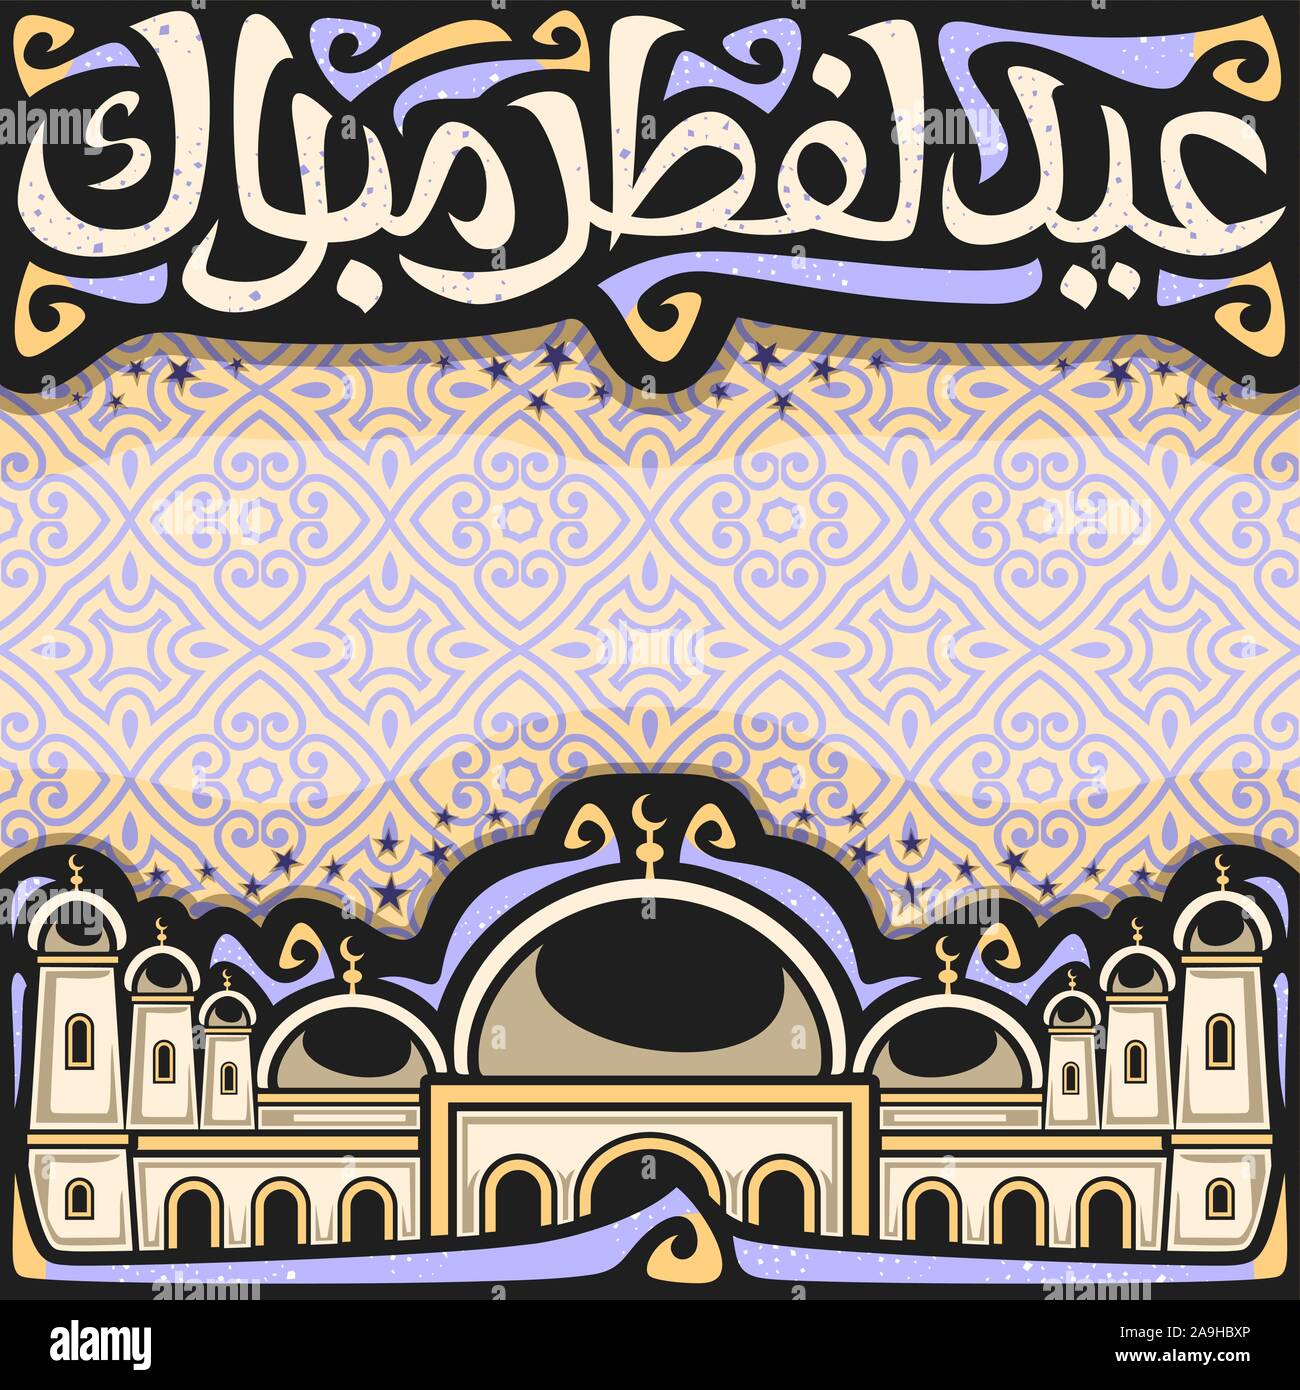 Vektor Plakat für Urlaub, ebenso wie das Eid al-Adha mit copy Space, schwarz Schlagzeile mit gedeiht, kalligraphische Schrift für Worte Eid al Fitr Mubarak in Arabisch, mosq Stock Vektor